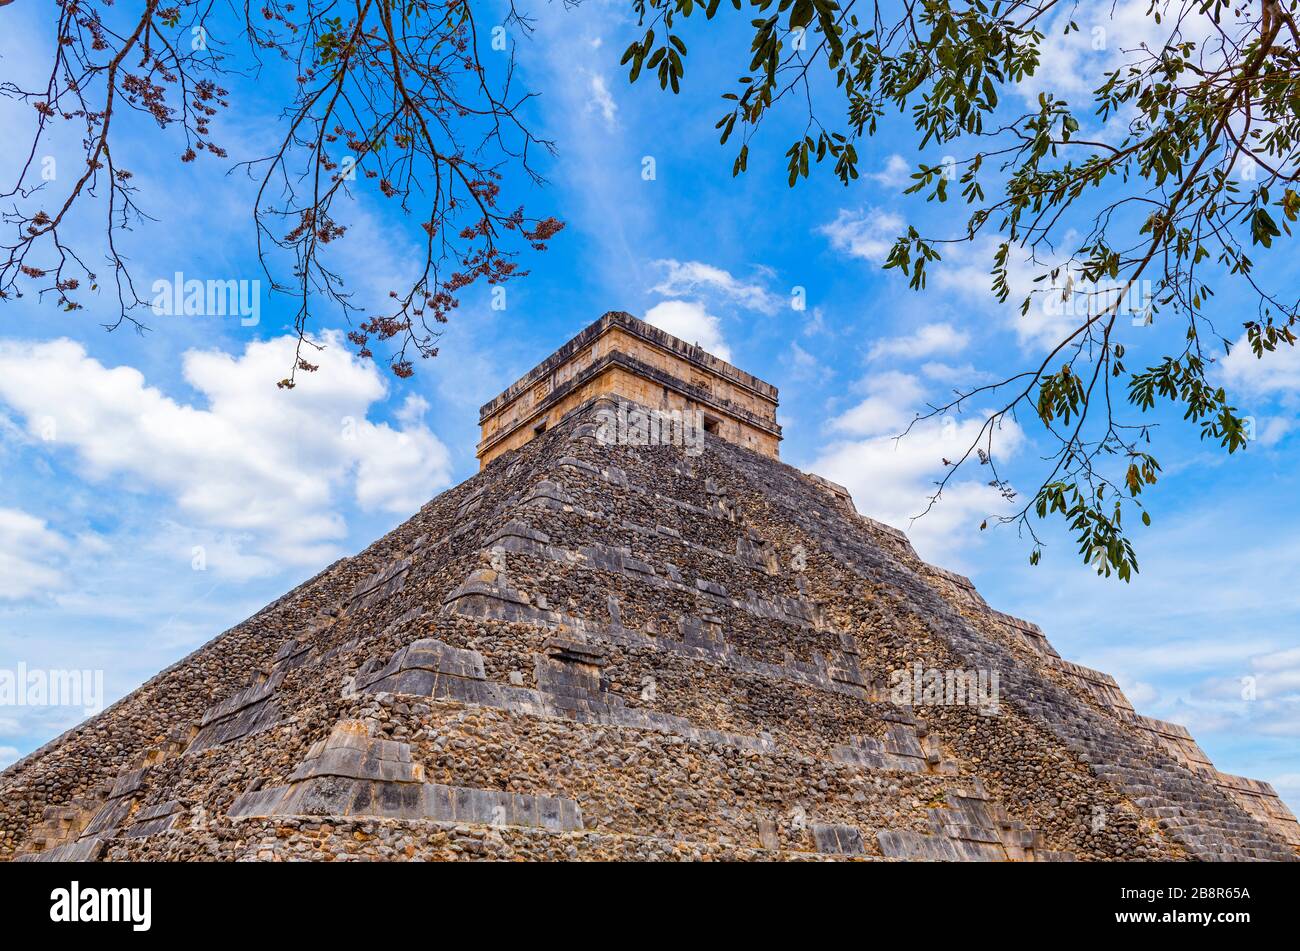 Die Maya-Pyramide von Kukulkan, auch bekannt als El Castillo, in Chichen Itza bei Merida und Cancun, Yucatan-Halbinsel, Mexiko. Stockfoto